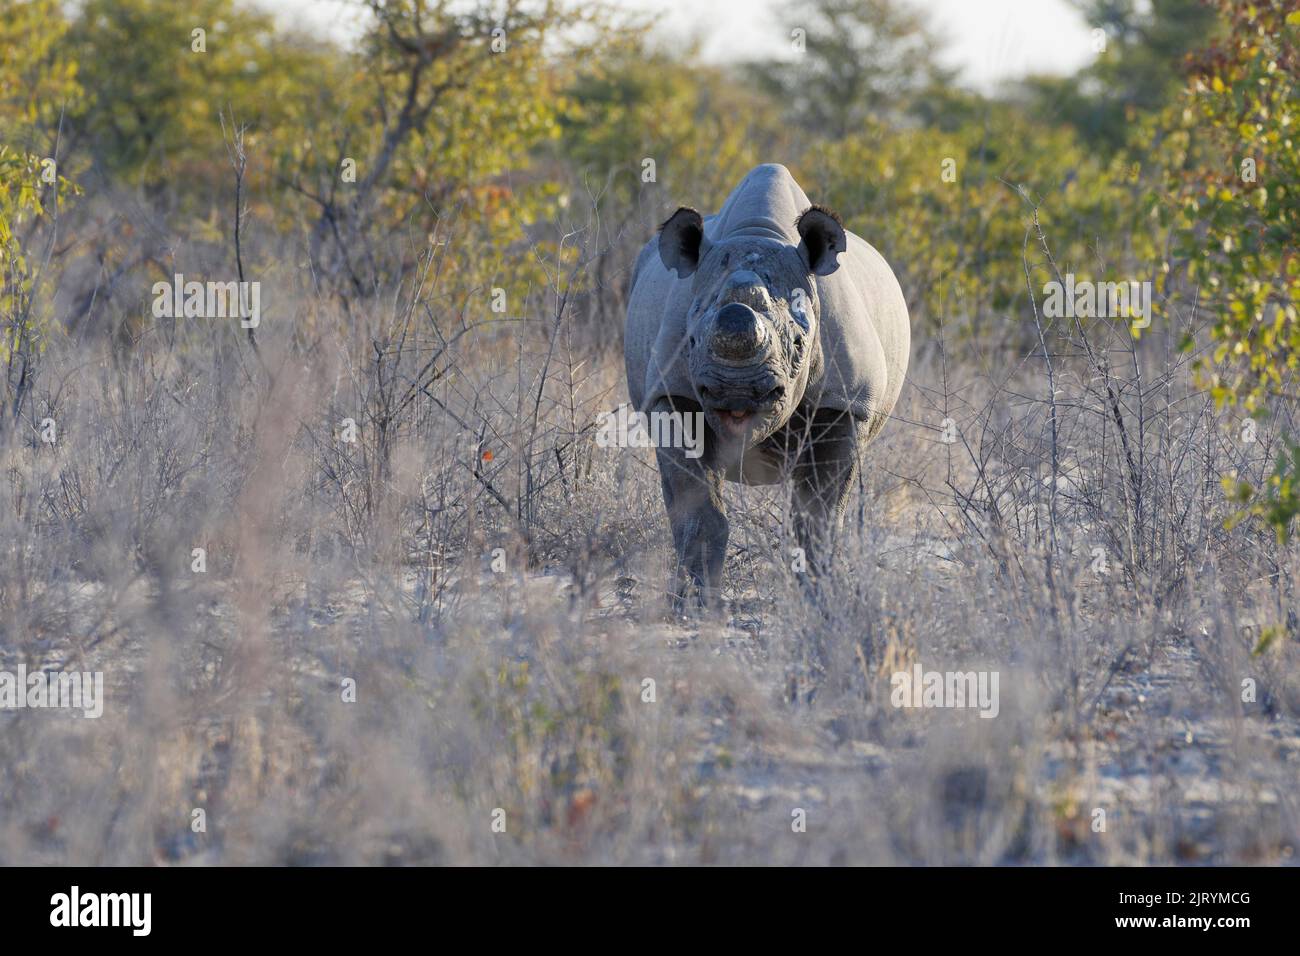 Rinoceronte negro (Diceros bicornis) con cuernos aserrados, medida contra la caza furtiva, forrajeo de adultos, Parque Nacional Etosha, Namibia, África Foto de stock